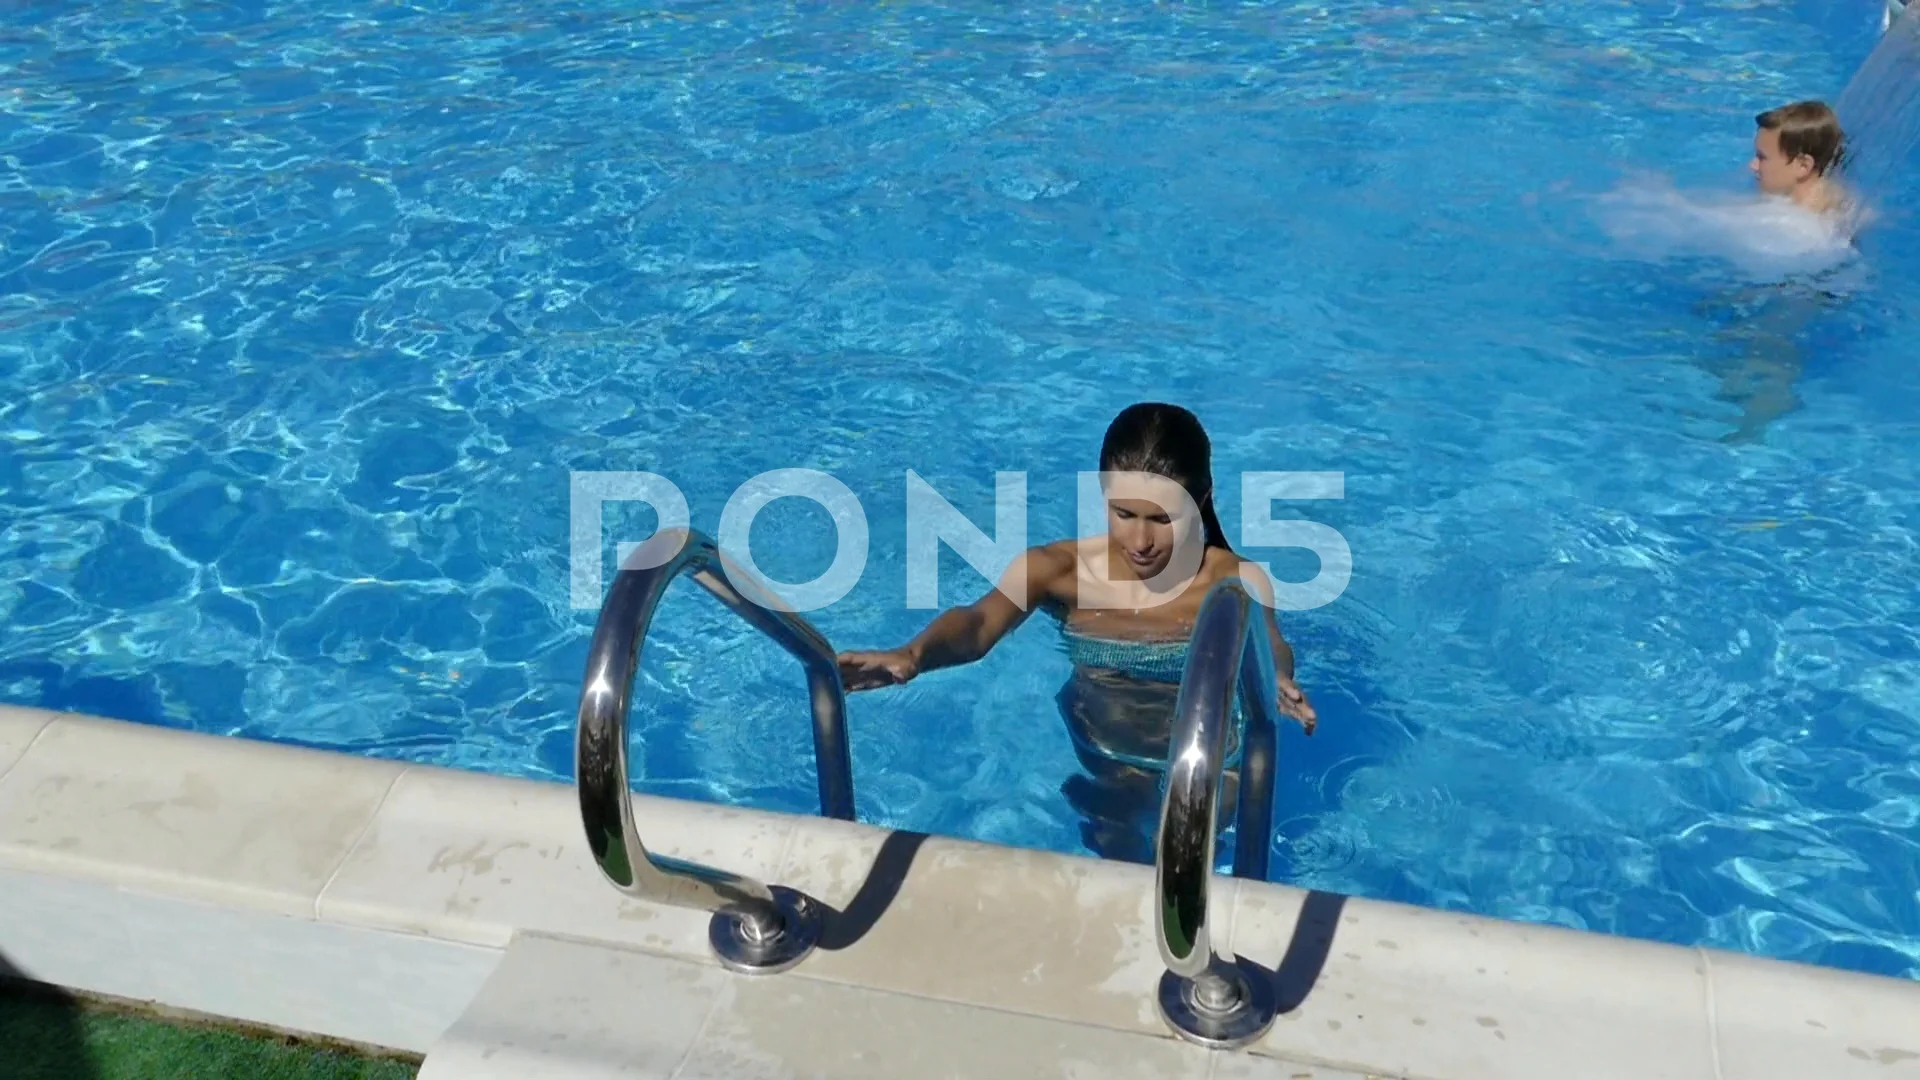 sexy pose ideas 🥰 #pool #ideas #fyp #foryou #poolpose #sexy | TikTok